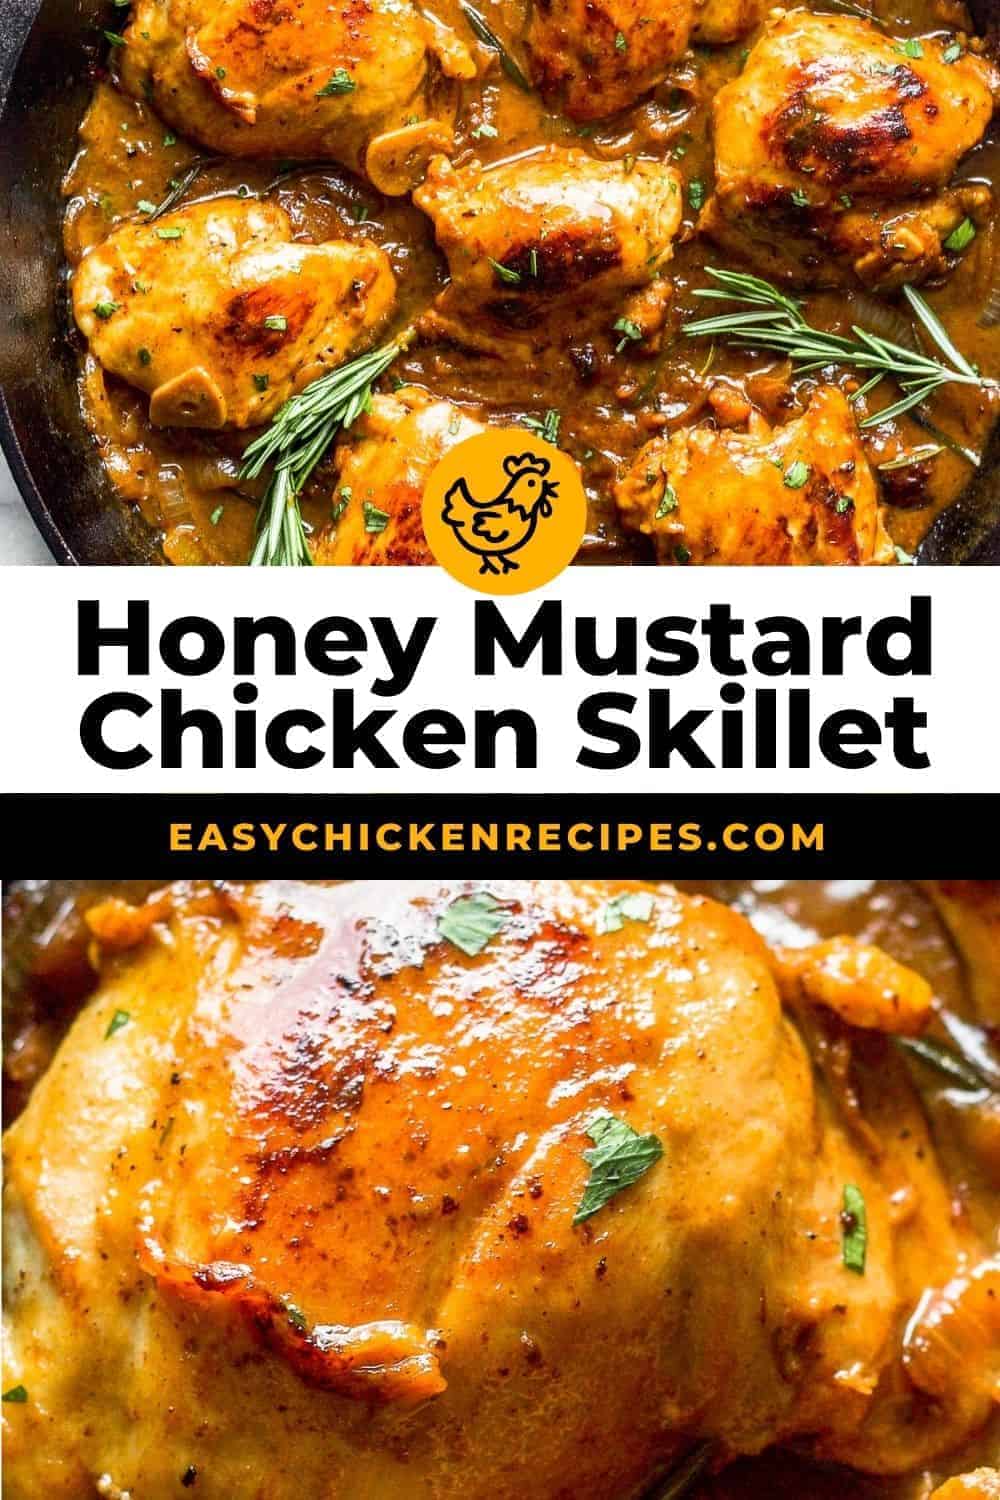 Honey Mustard Chicken Skillet - Easy Chicken Recipes (HOW TO VIDEO)